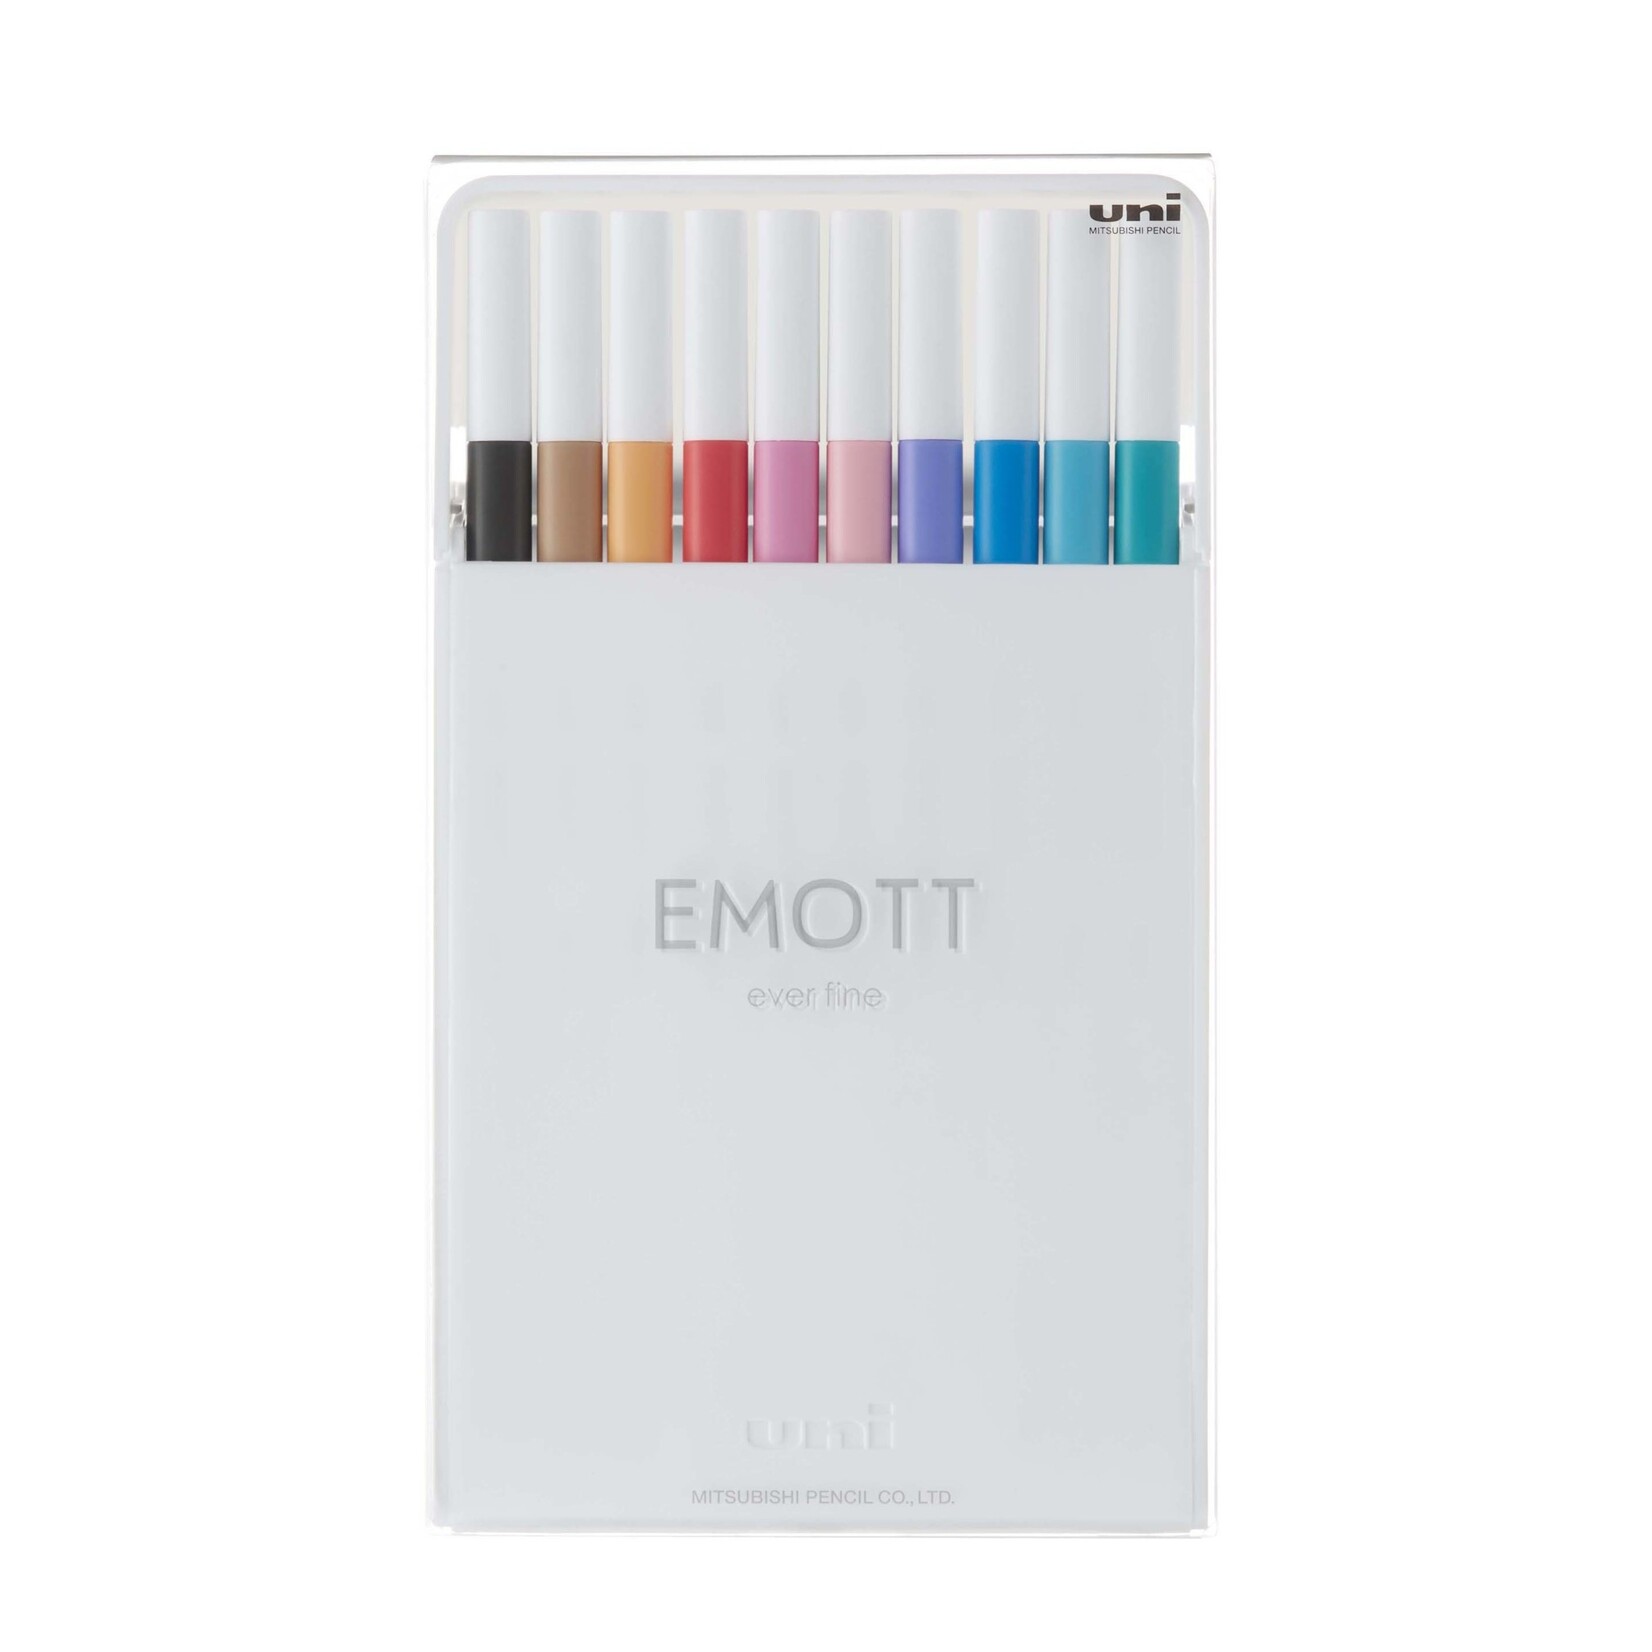 UX Uni Emott Fineliners EMOTT Fineliner Pen Sets, 10-Pen Set #2